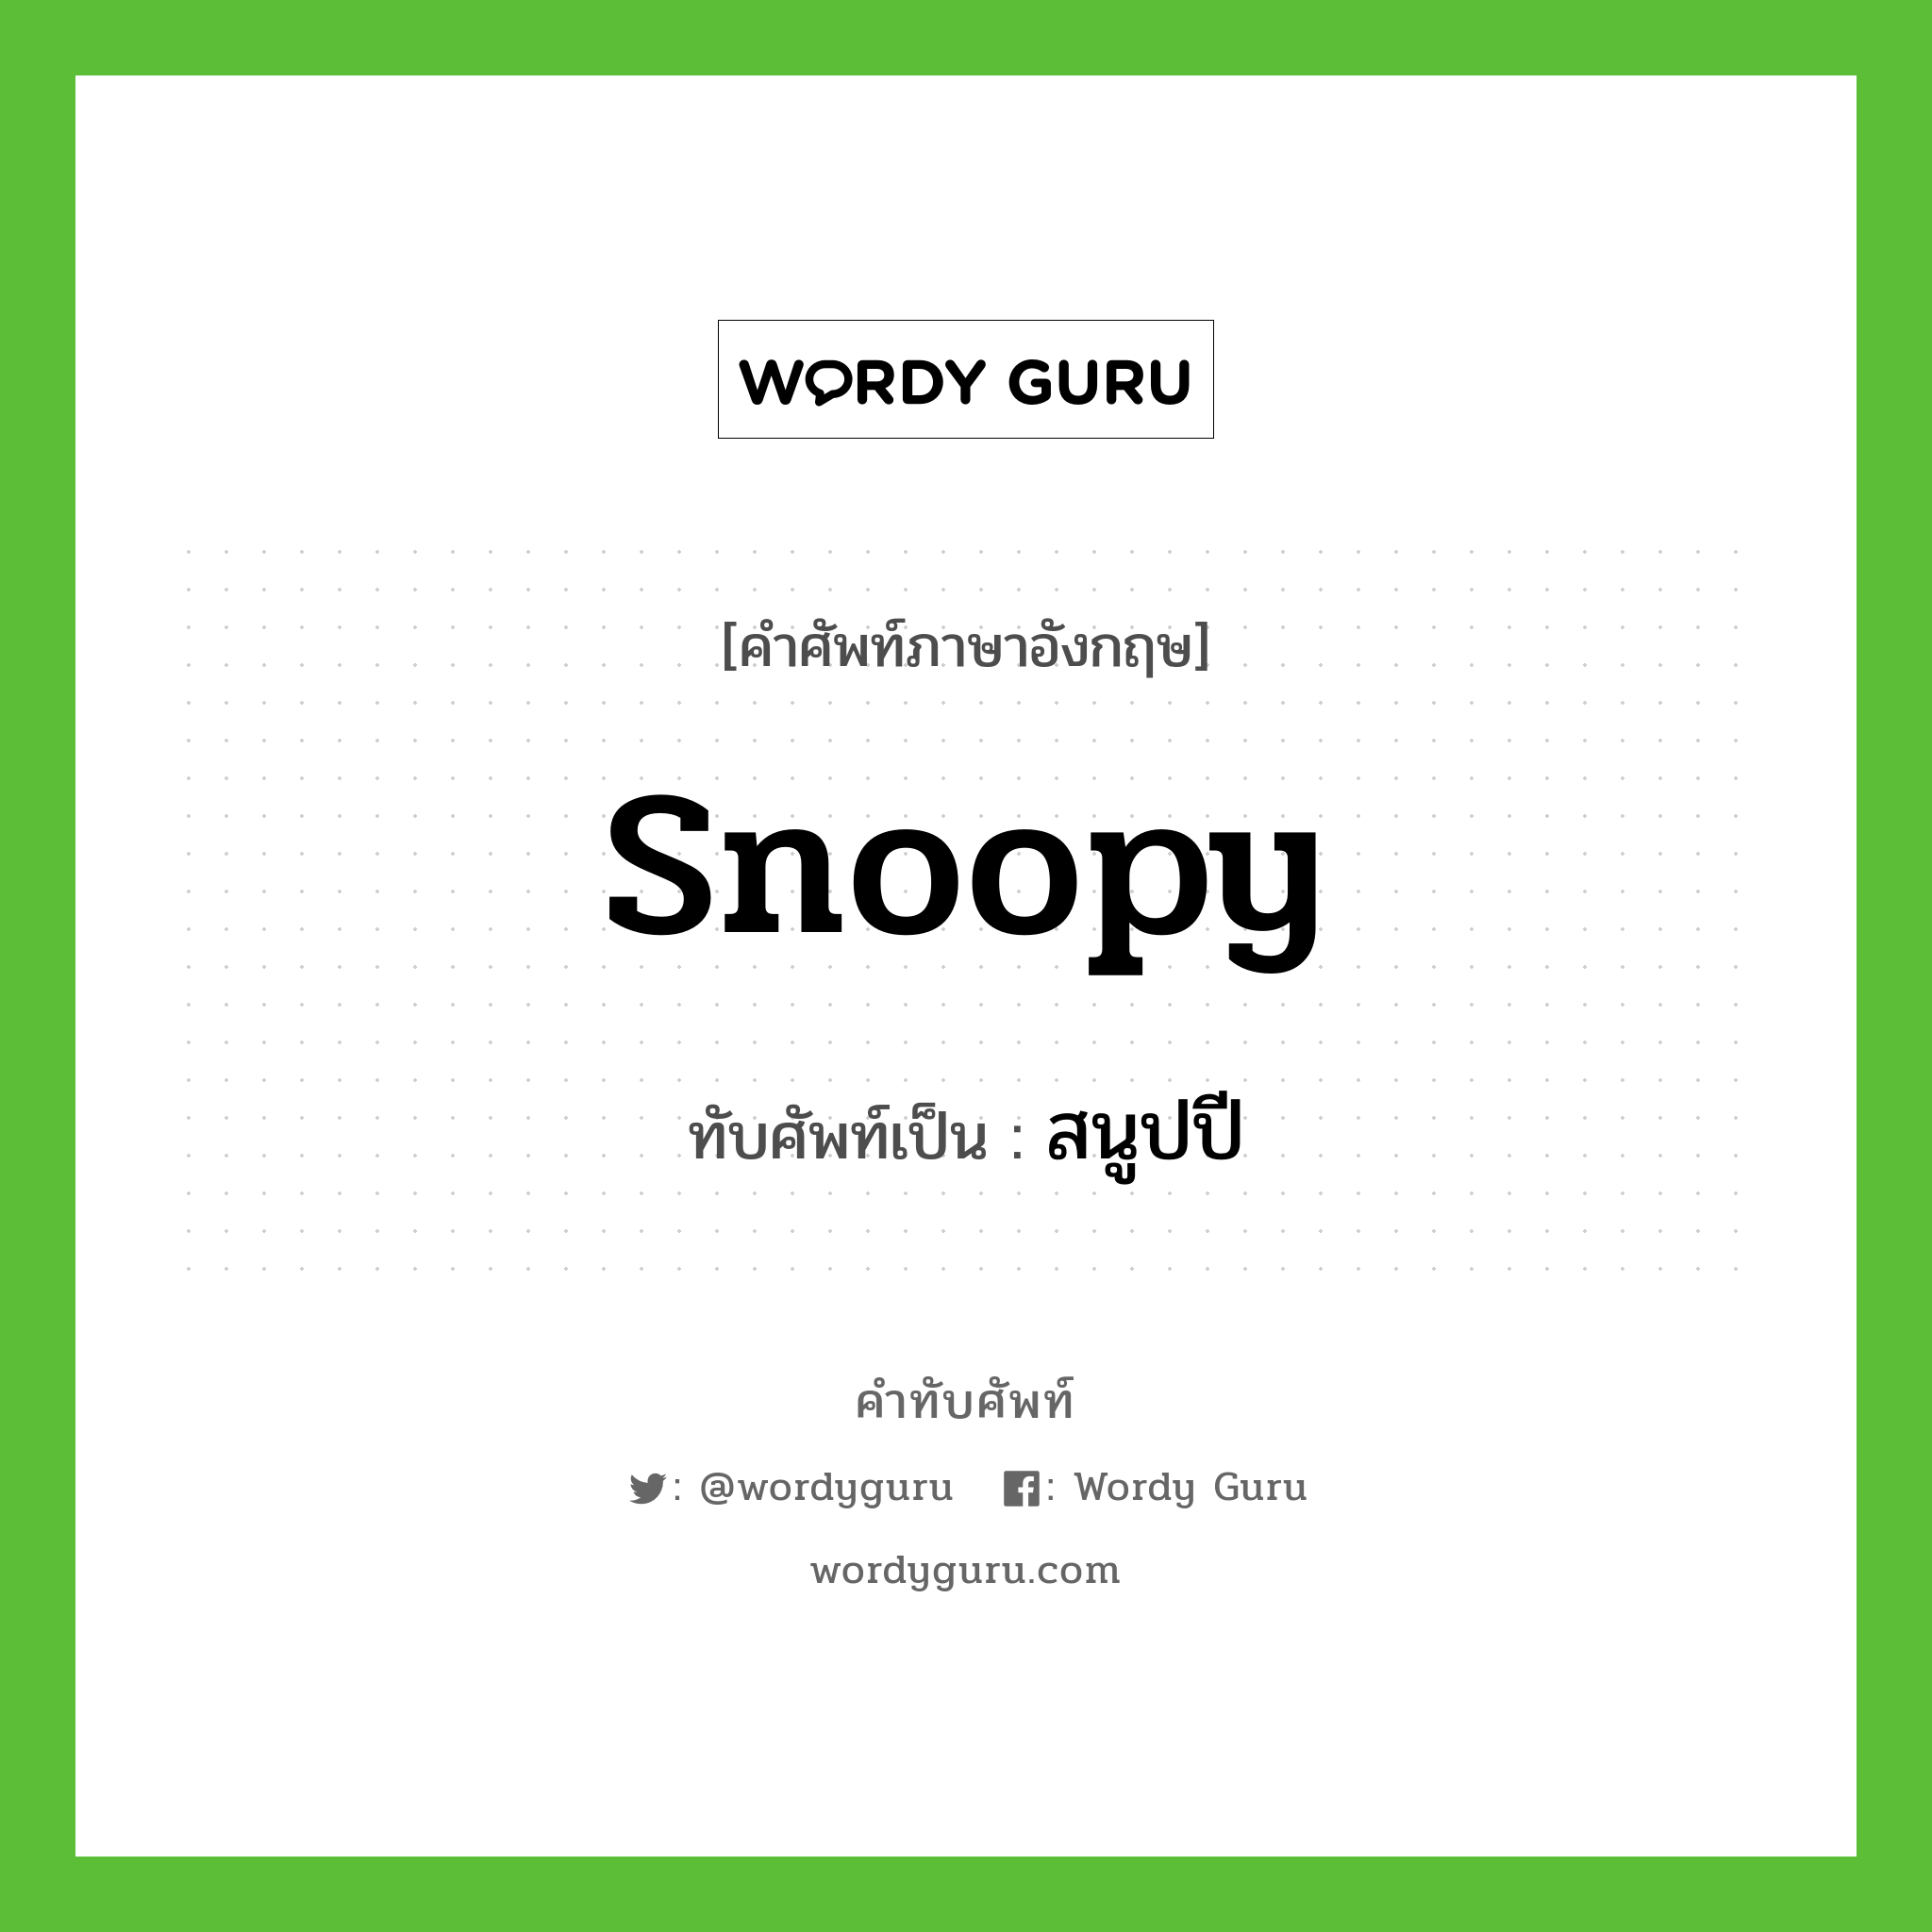 Snoopy เขียนเป็นคำไทยว่าอะไร?, คำศัพท์ภาษาอังกฤษ Snoopy ทับศัพท์เป็น สนูปปี